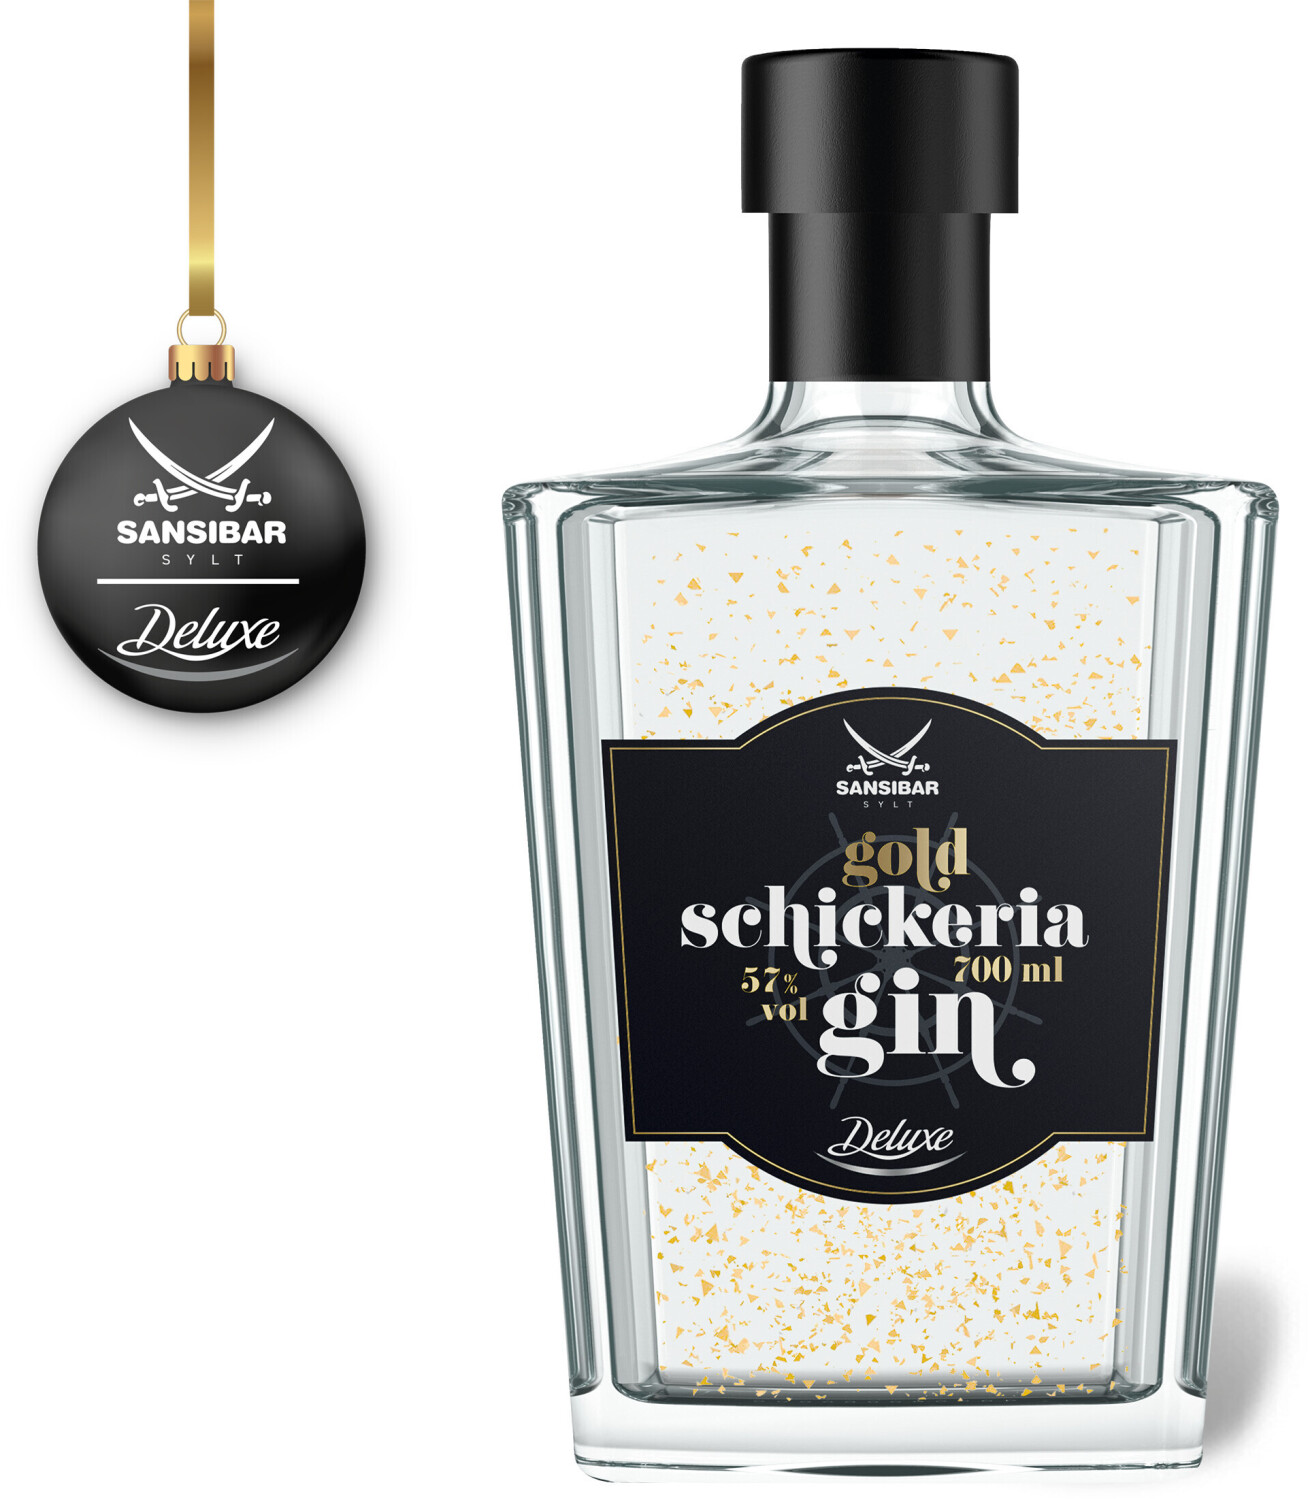 Sansibar Deluxe Schickeria Gin Gold 0,7l 57% ab 19,99 € | Preisvergleich  bei